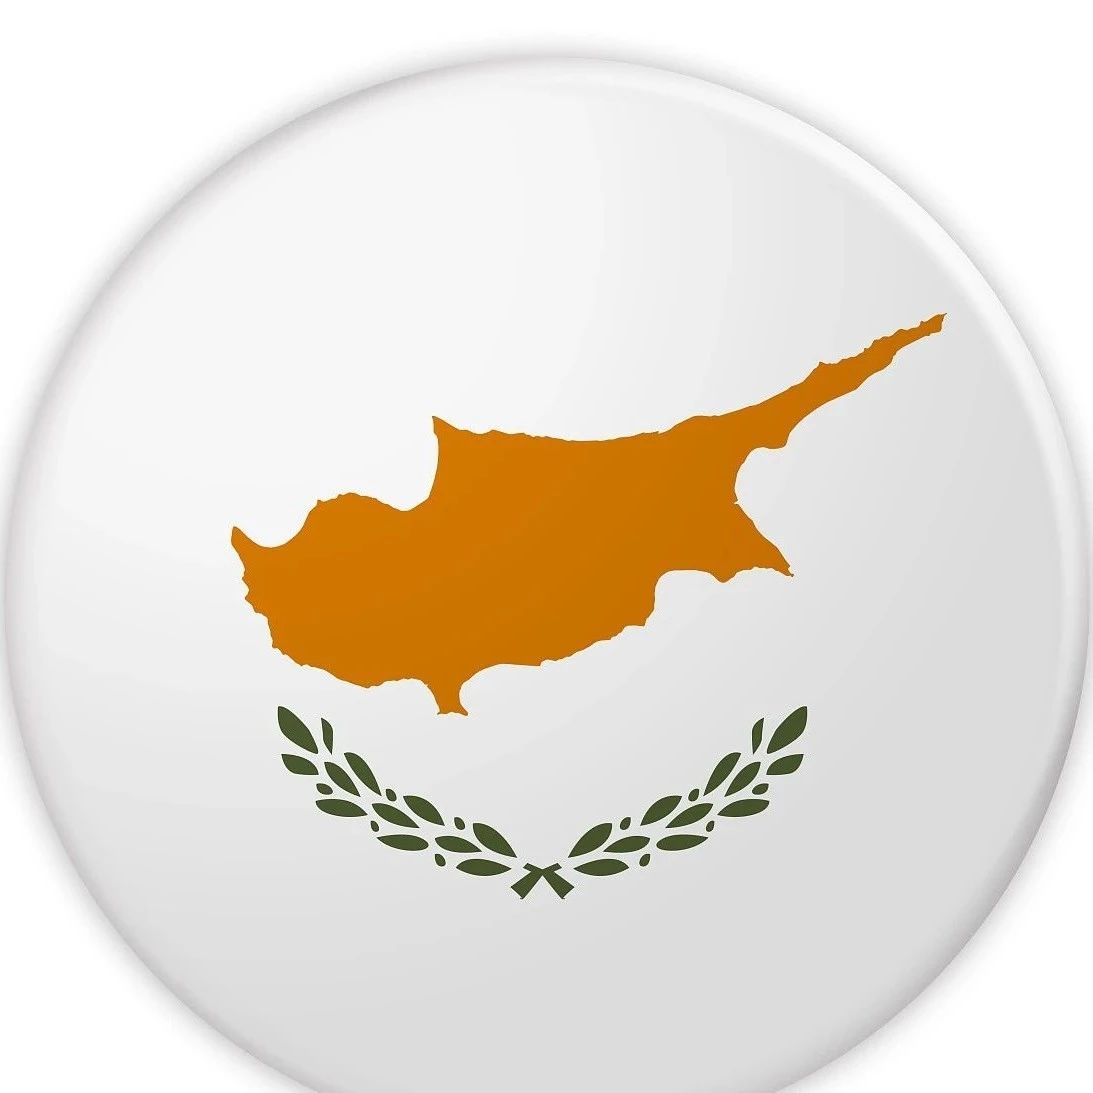 塞浦路斯移民项目推出限时重磅优惠!有意向的您不可错过!